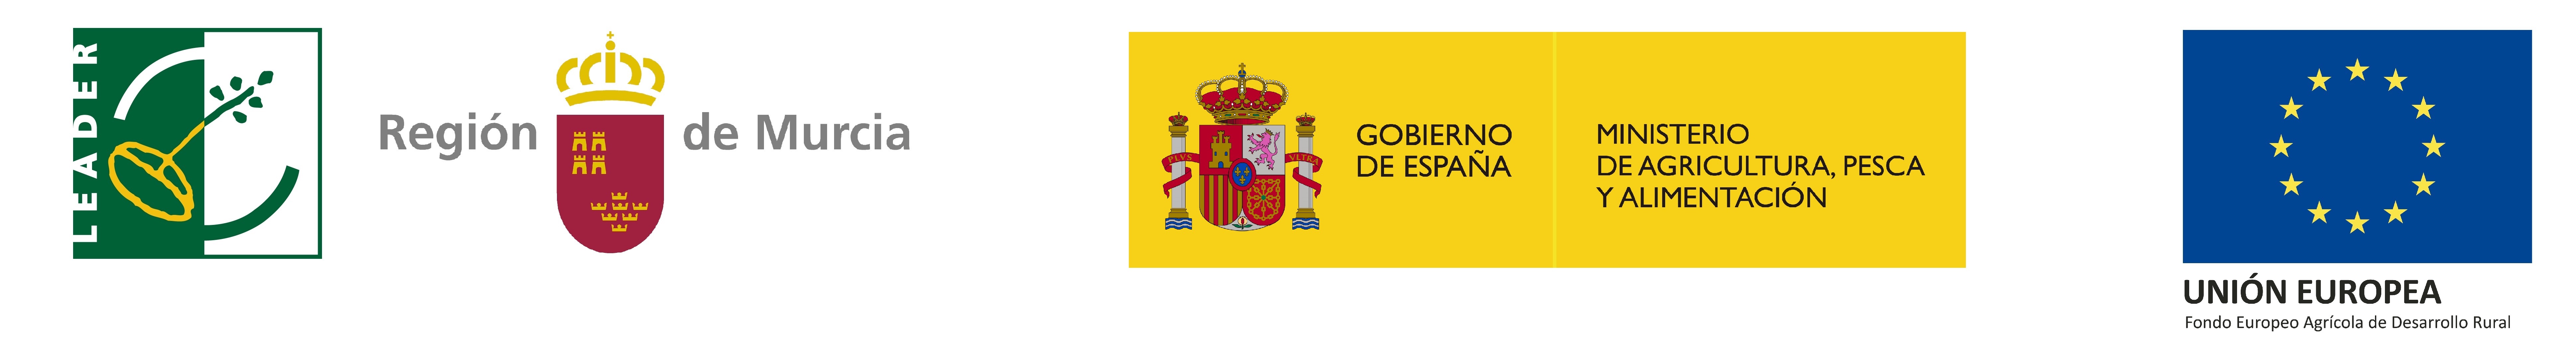 Logotipo Leader-Región de Murcia-Ministerio de Agricultura, Pesca y Alimentación-Unión Europea Web